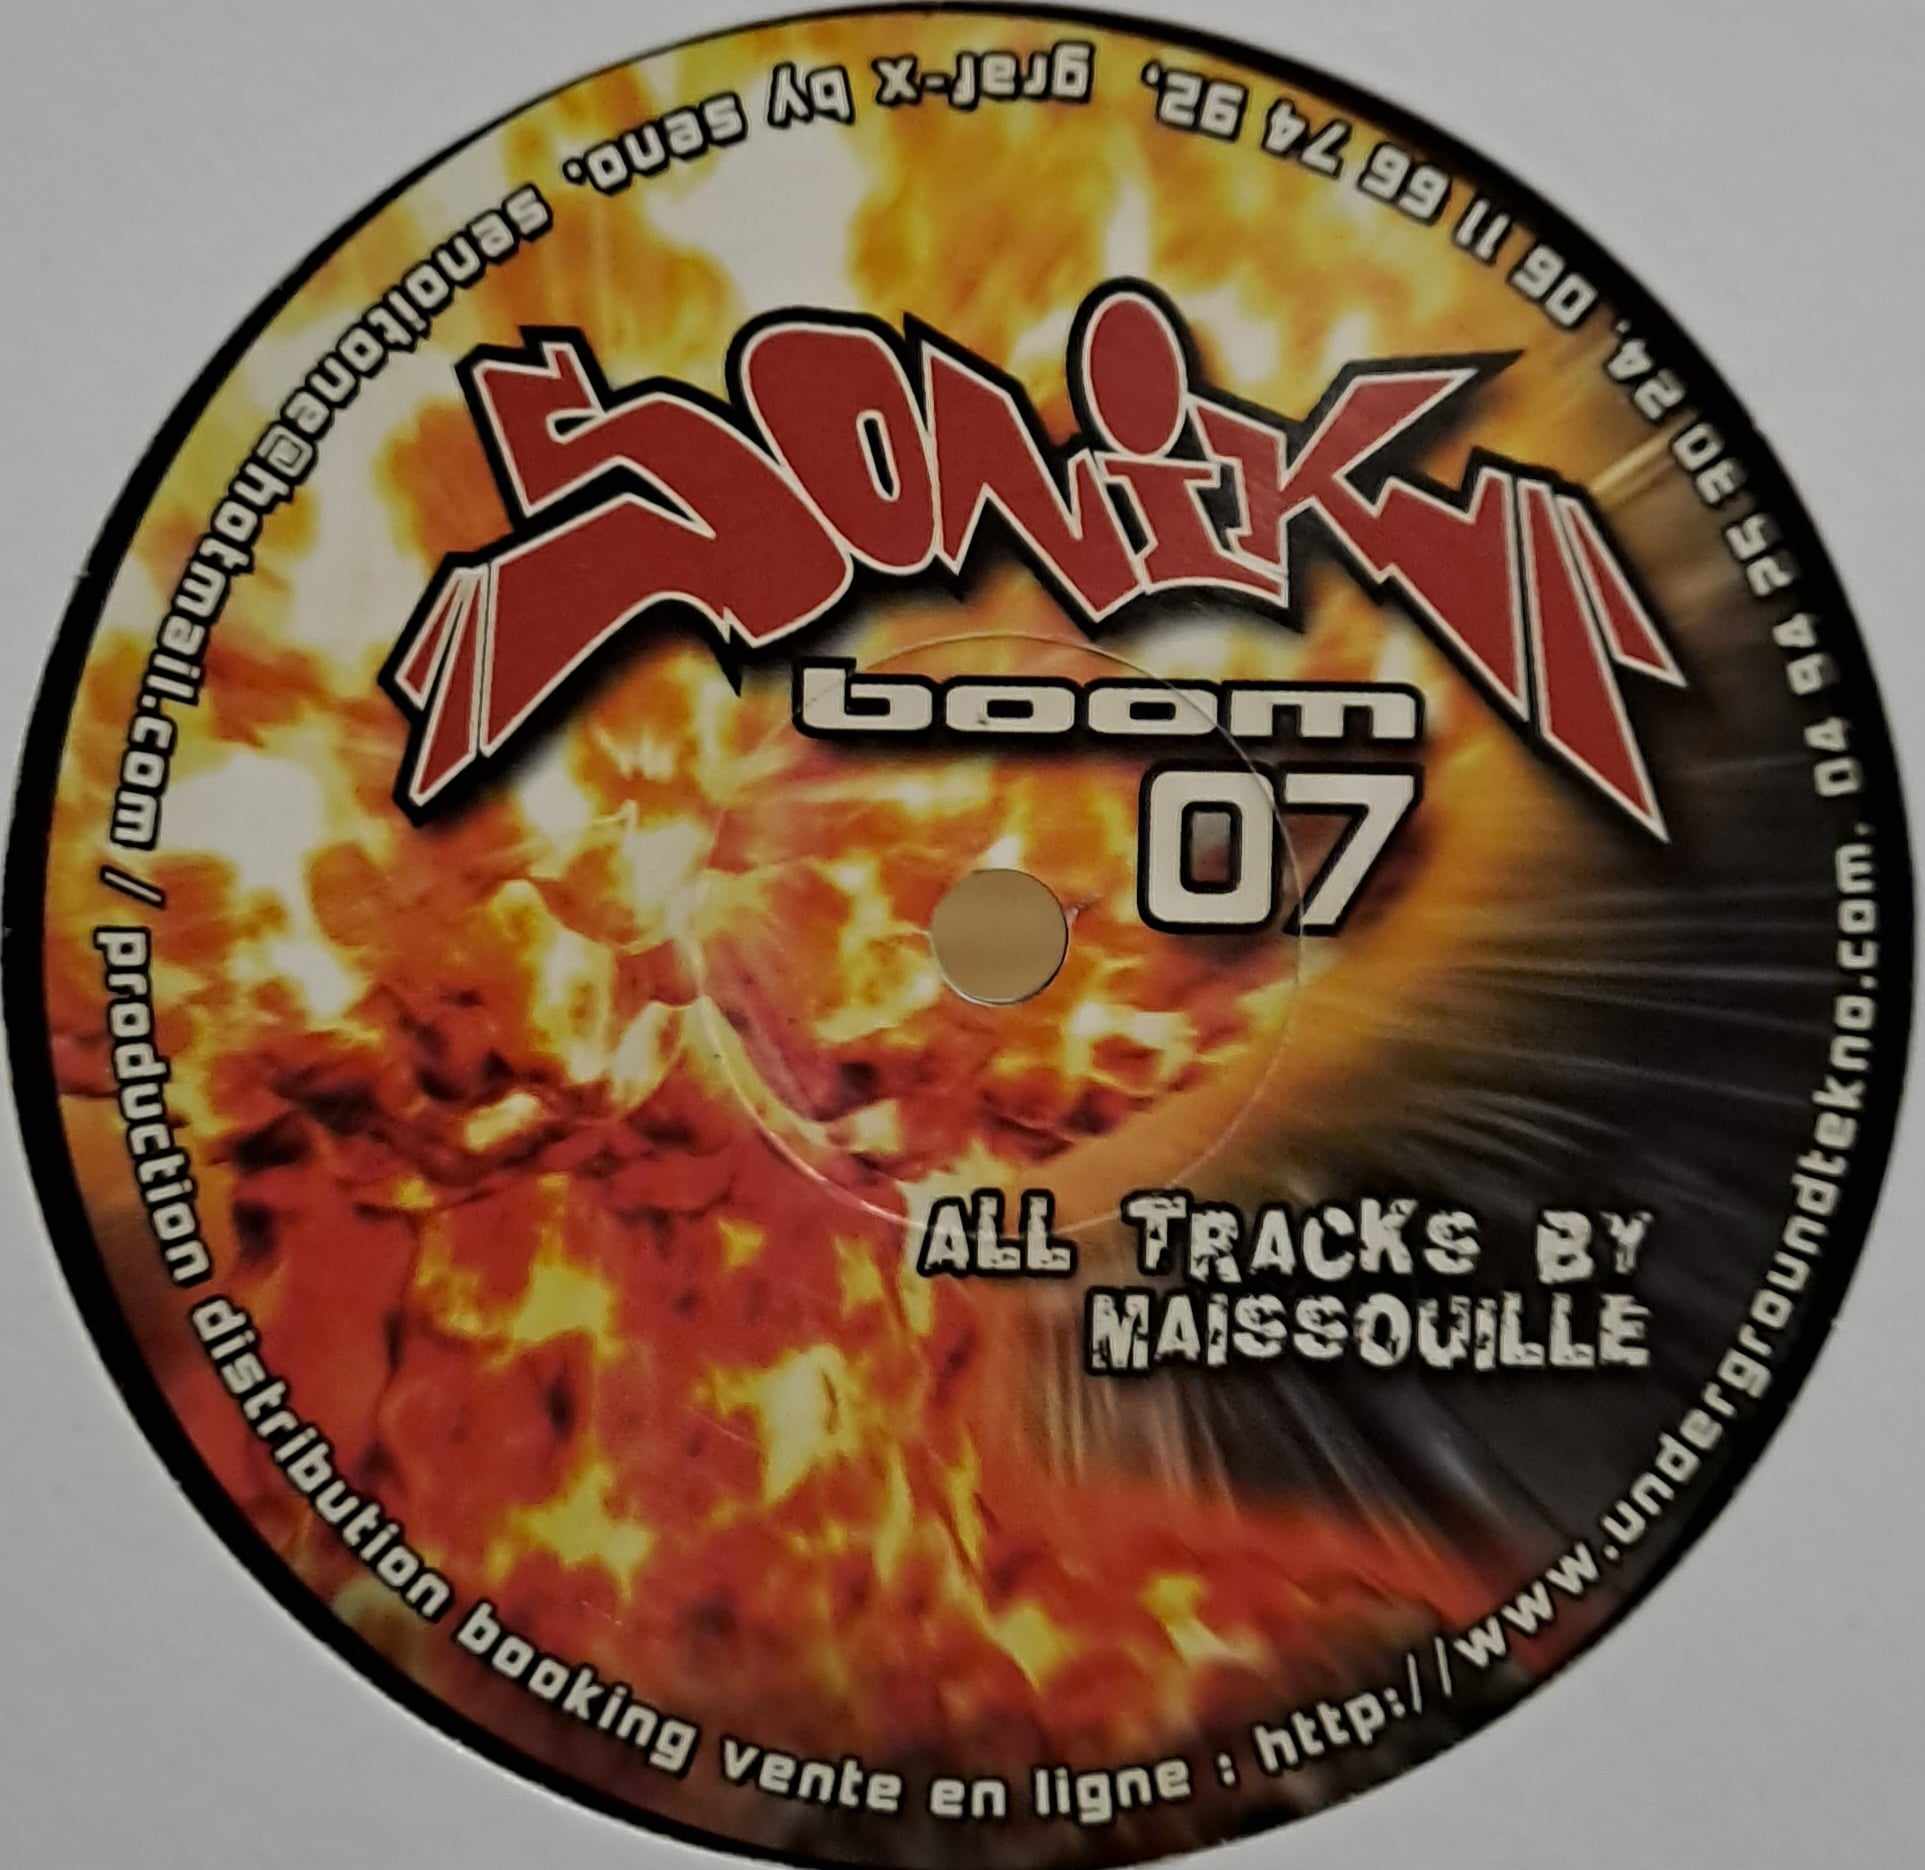 Sonik Boom 07 - vinyle freetekno